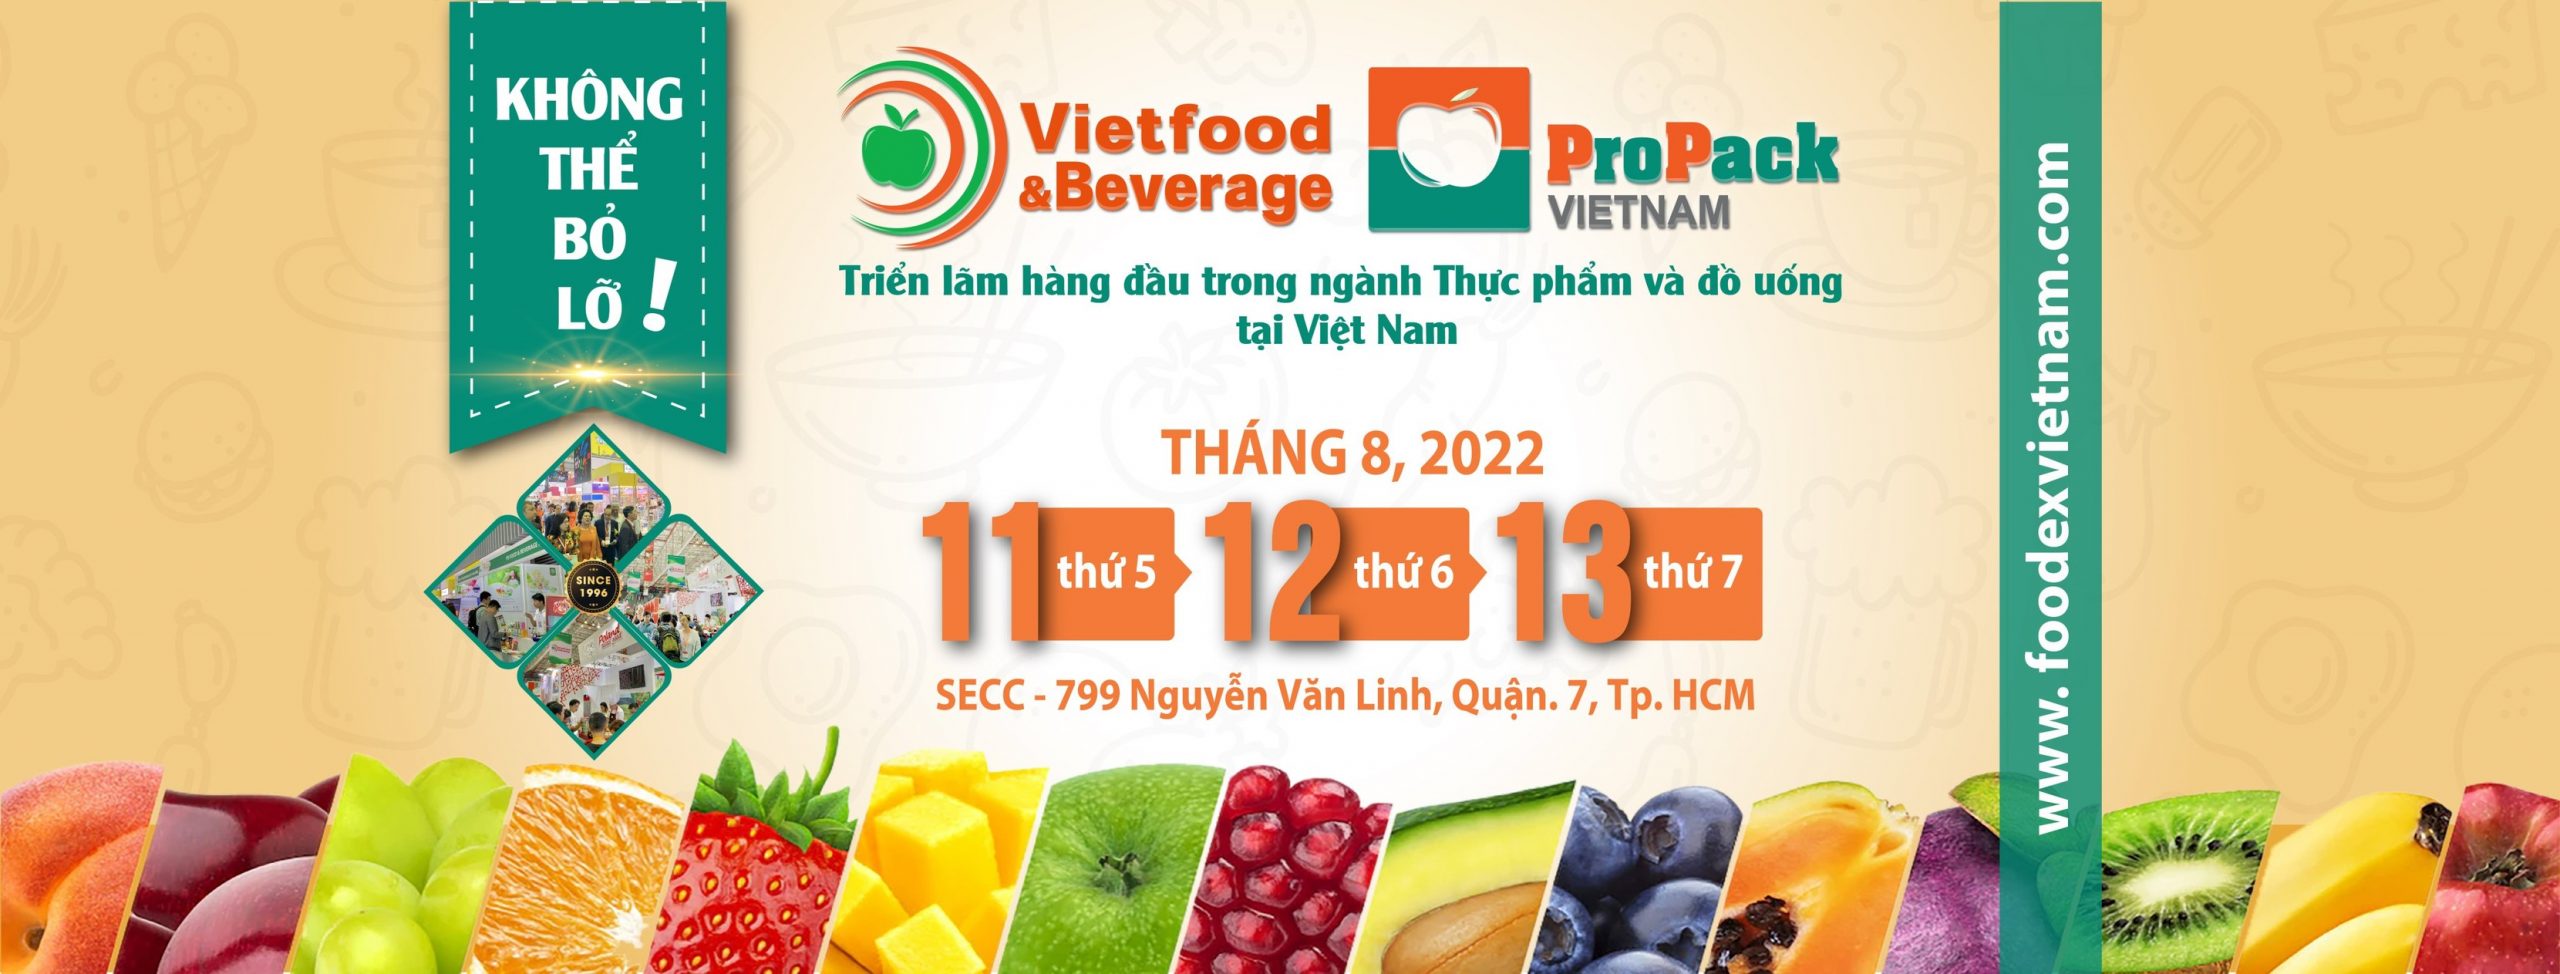 Sự kiện Vietfood & Beverage 2022